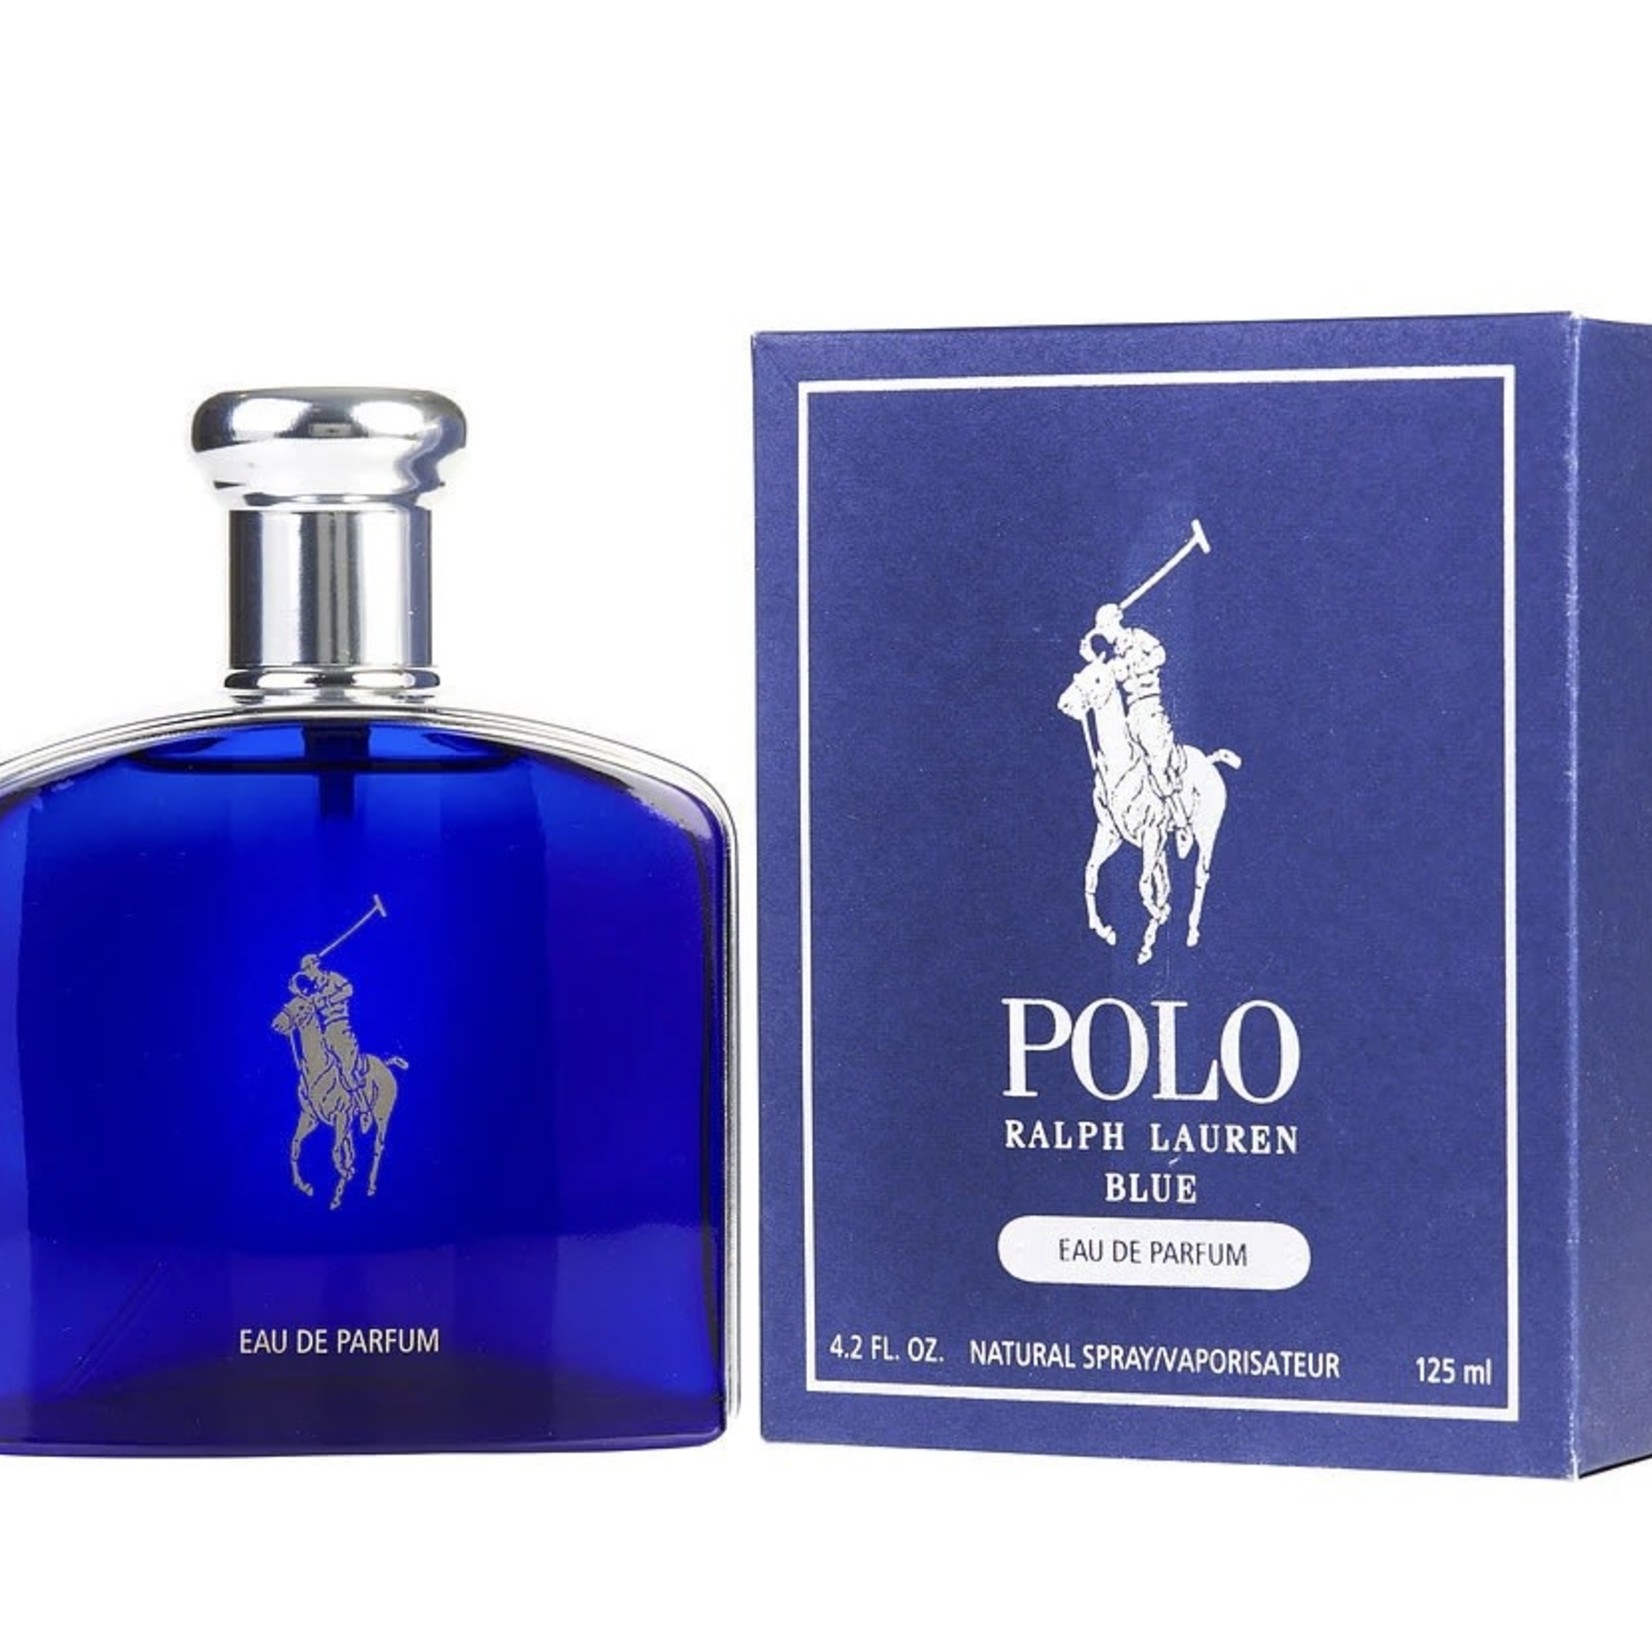 Ralph Lauren Polo Blue - Eau de Parfum